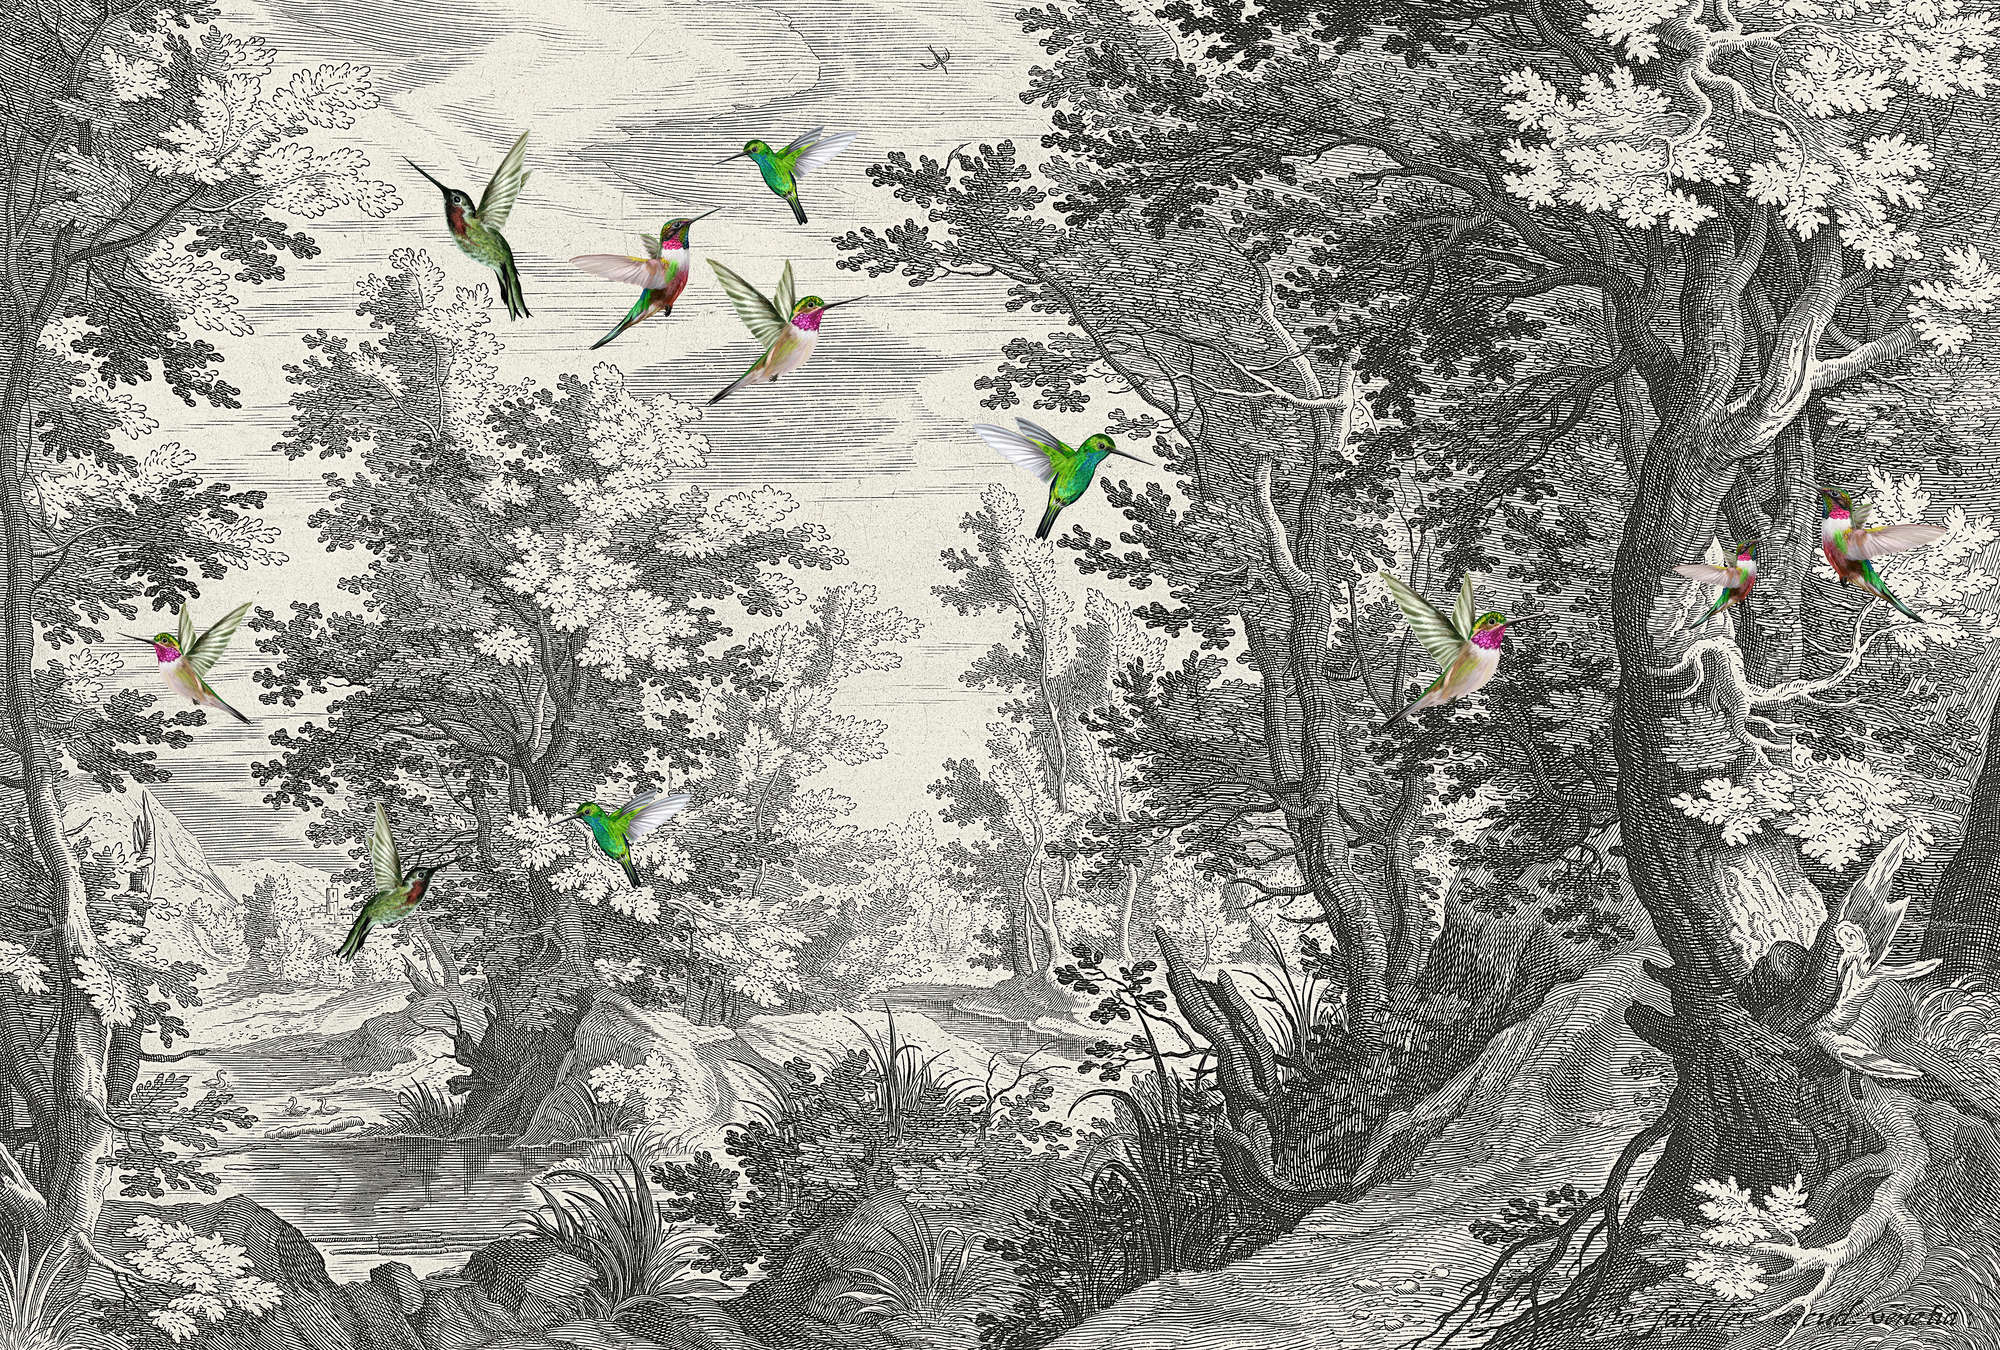             Fancy Forest 1 - Impresión de Tipo de Pared de Paisaje con Pájaros
        